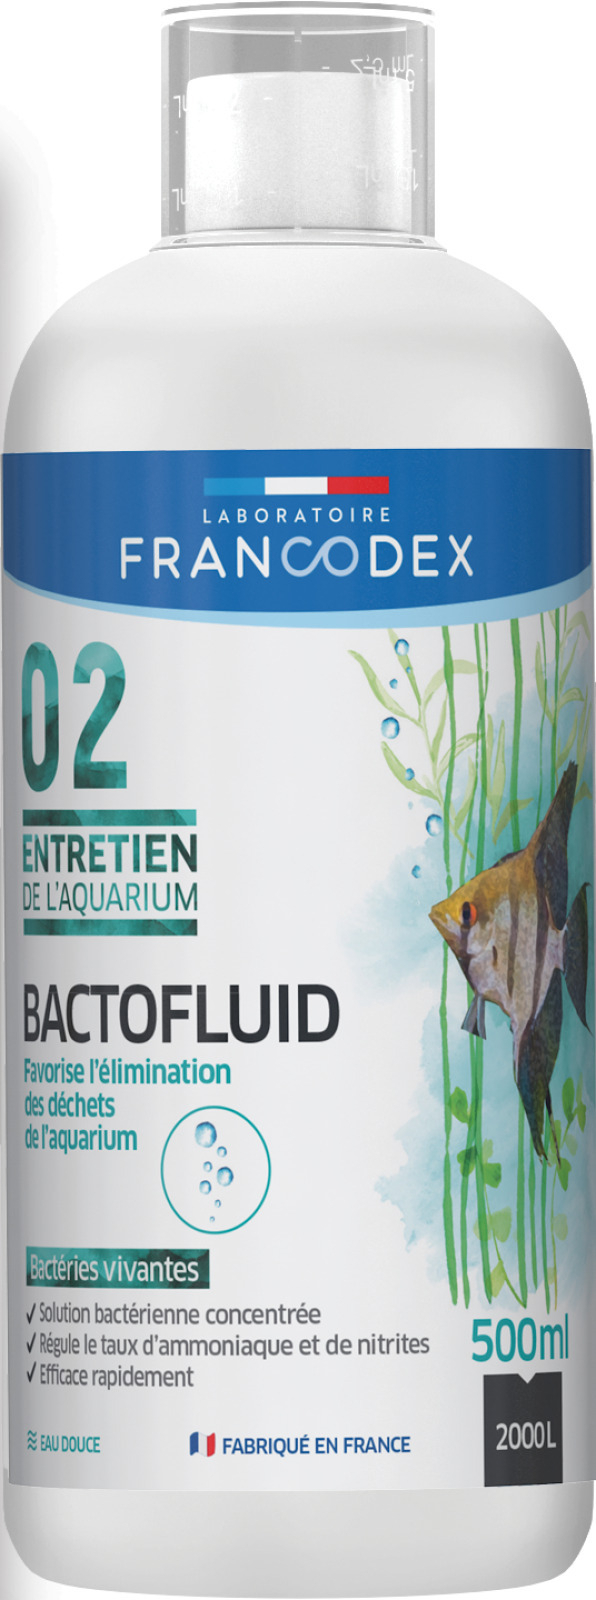 Bactofluid Aquarienpflege FRANCODEX